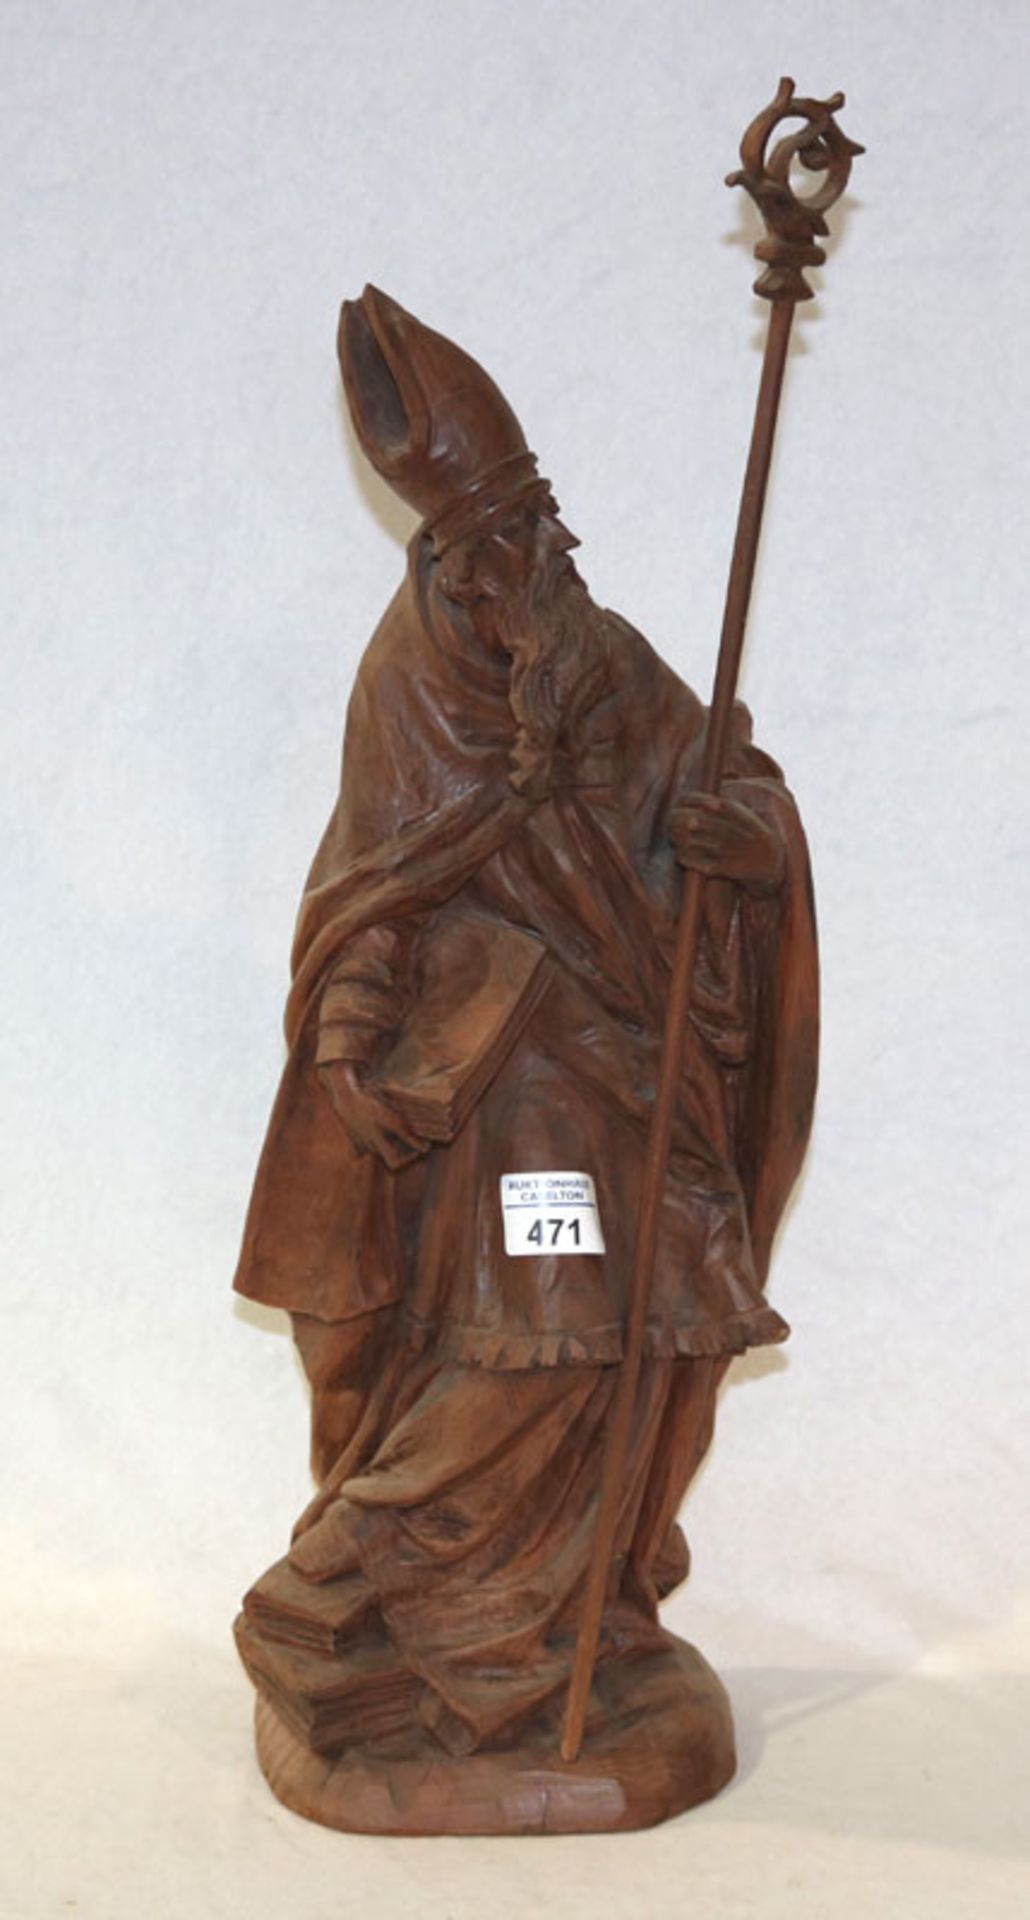 Holz Figurenskulptur 'Bischof', um 1900, H 53 cm , Altersspuren, Trocknungsrisse